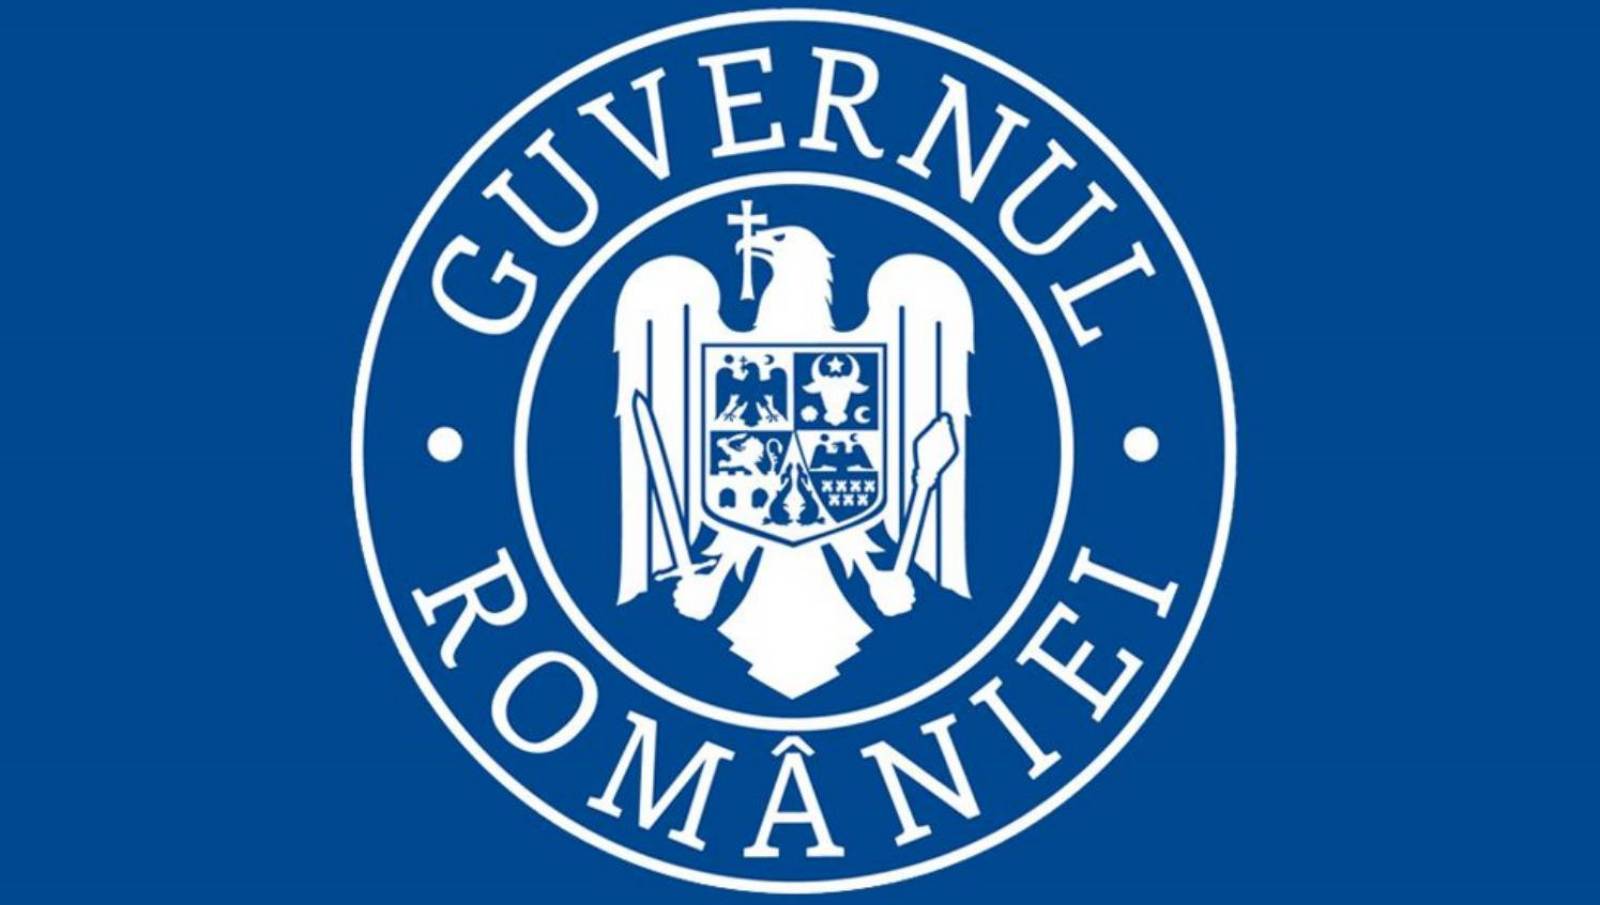 De Roemeense regering heeft regels opgesteld voor de heropening van scholen